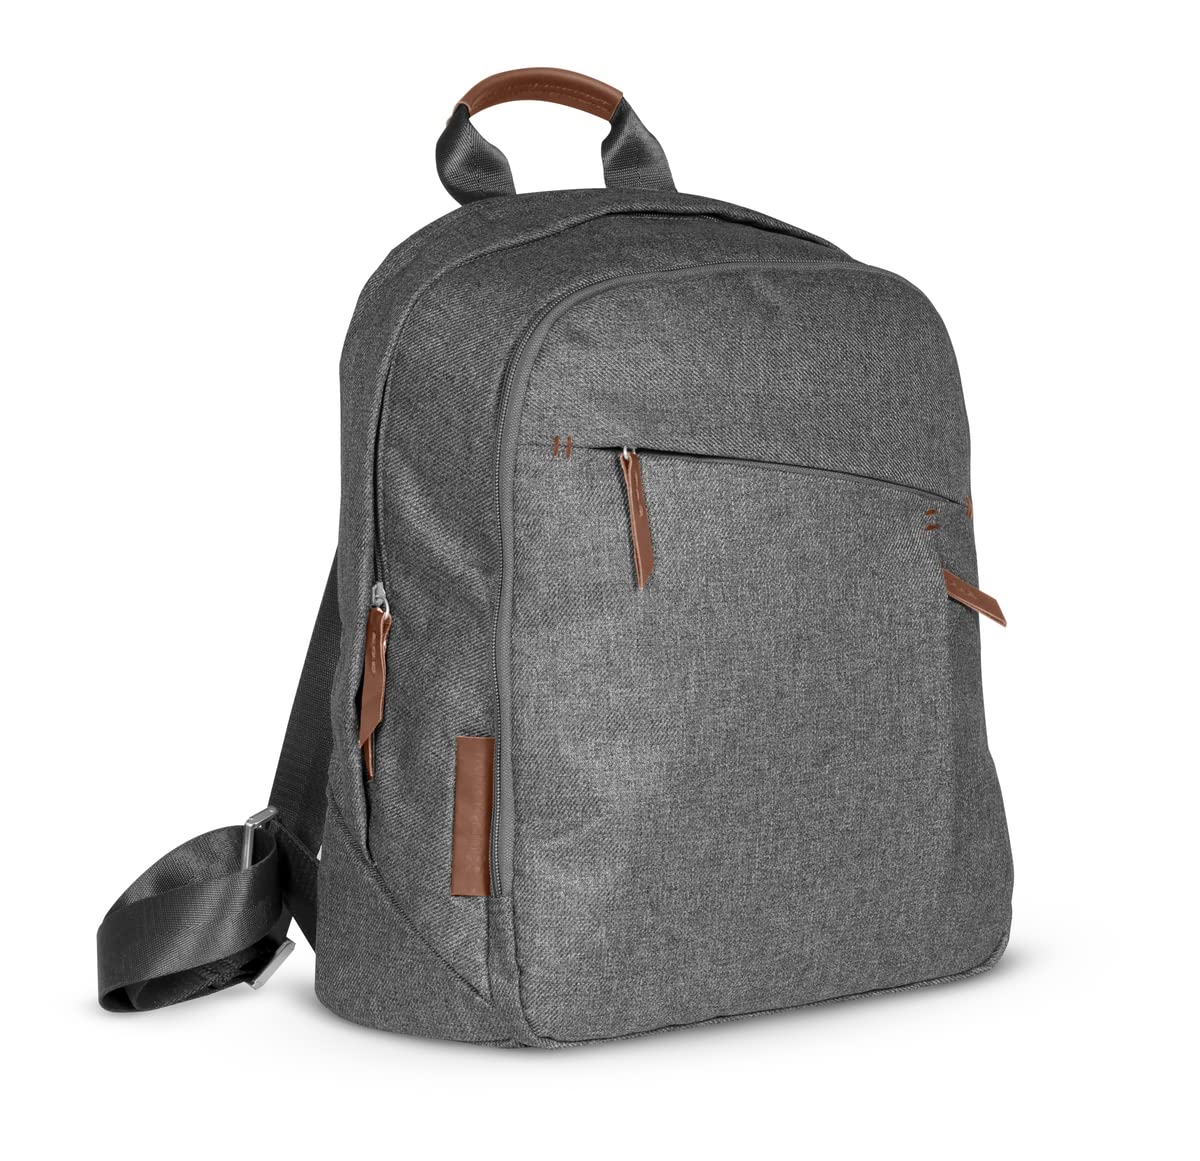 Changing Backpack - Greyson (chacoal Melange/Saddle Leather)